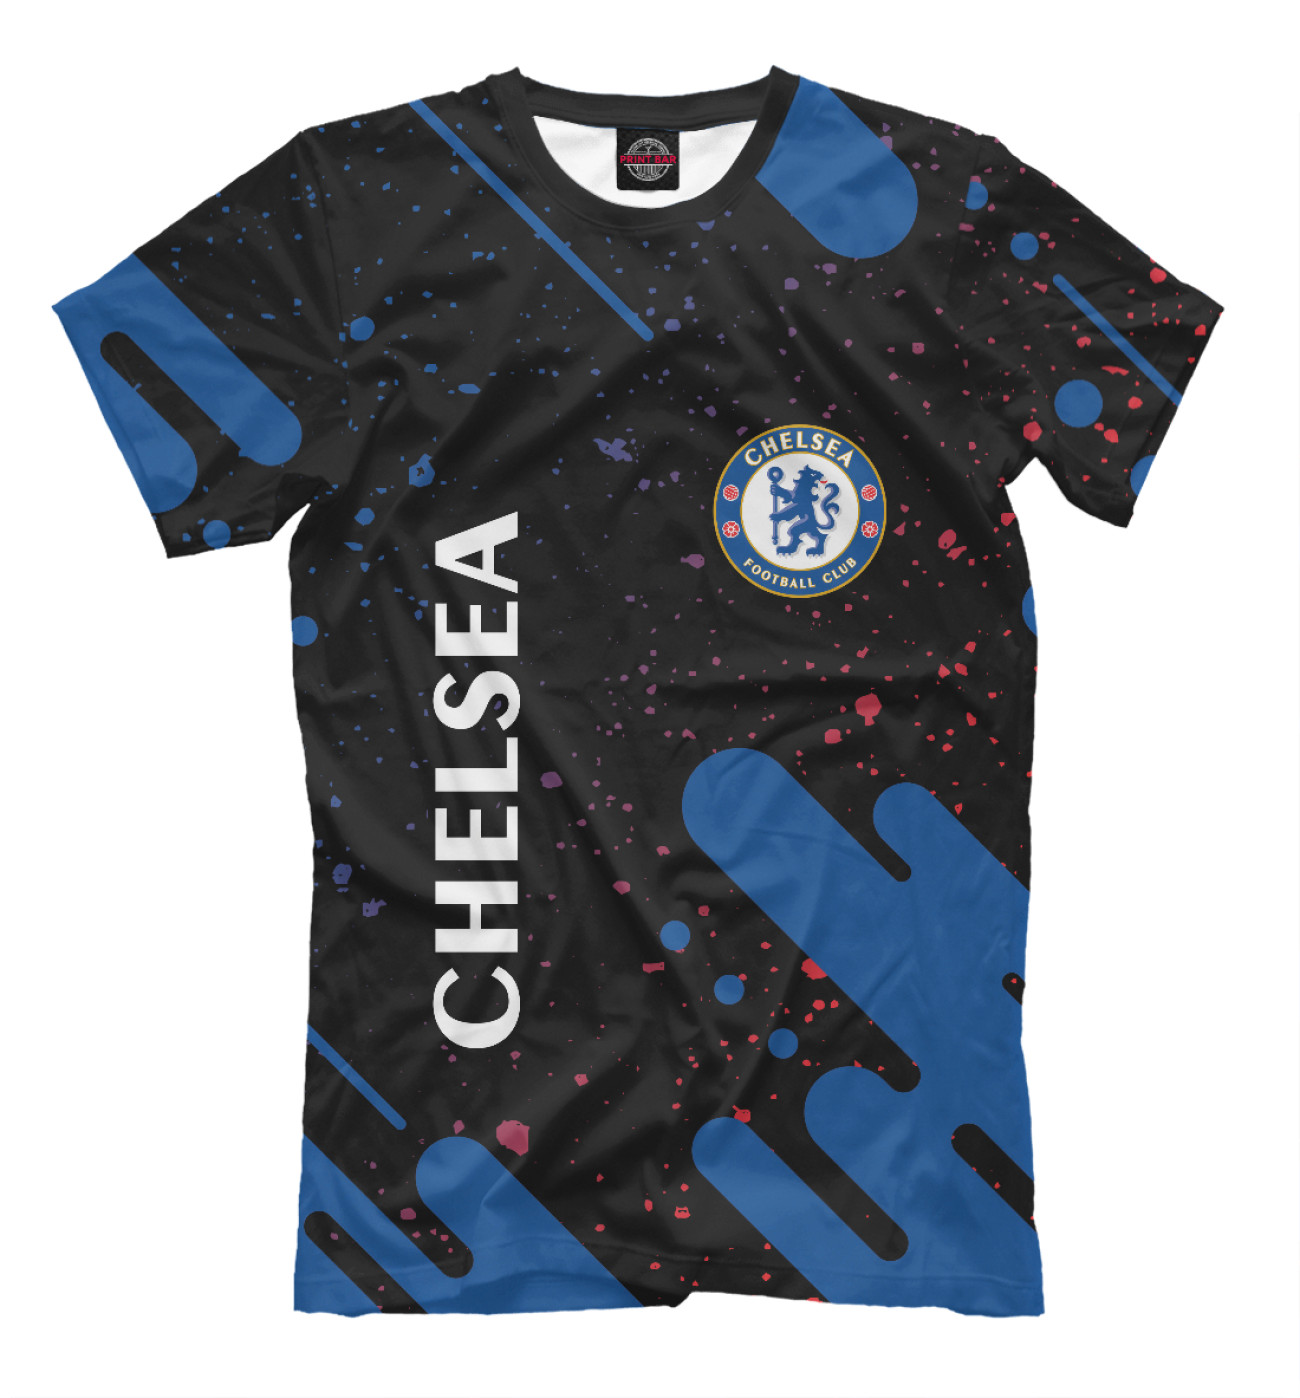 Мужская Футболка Chelsea F.C. / Челси, артикул: CHL-582995-fut-2